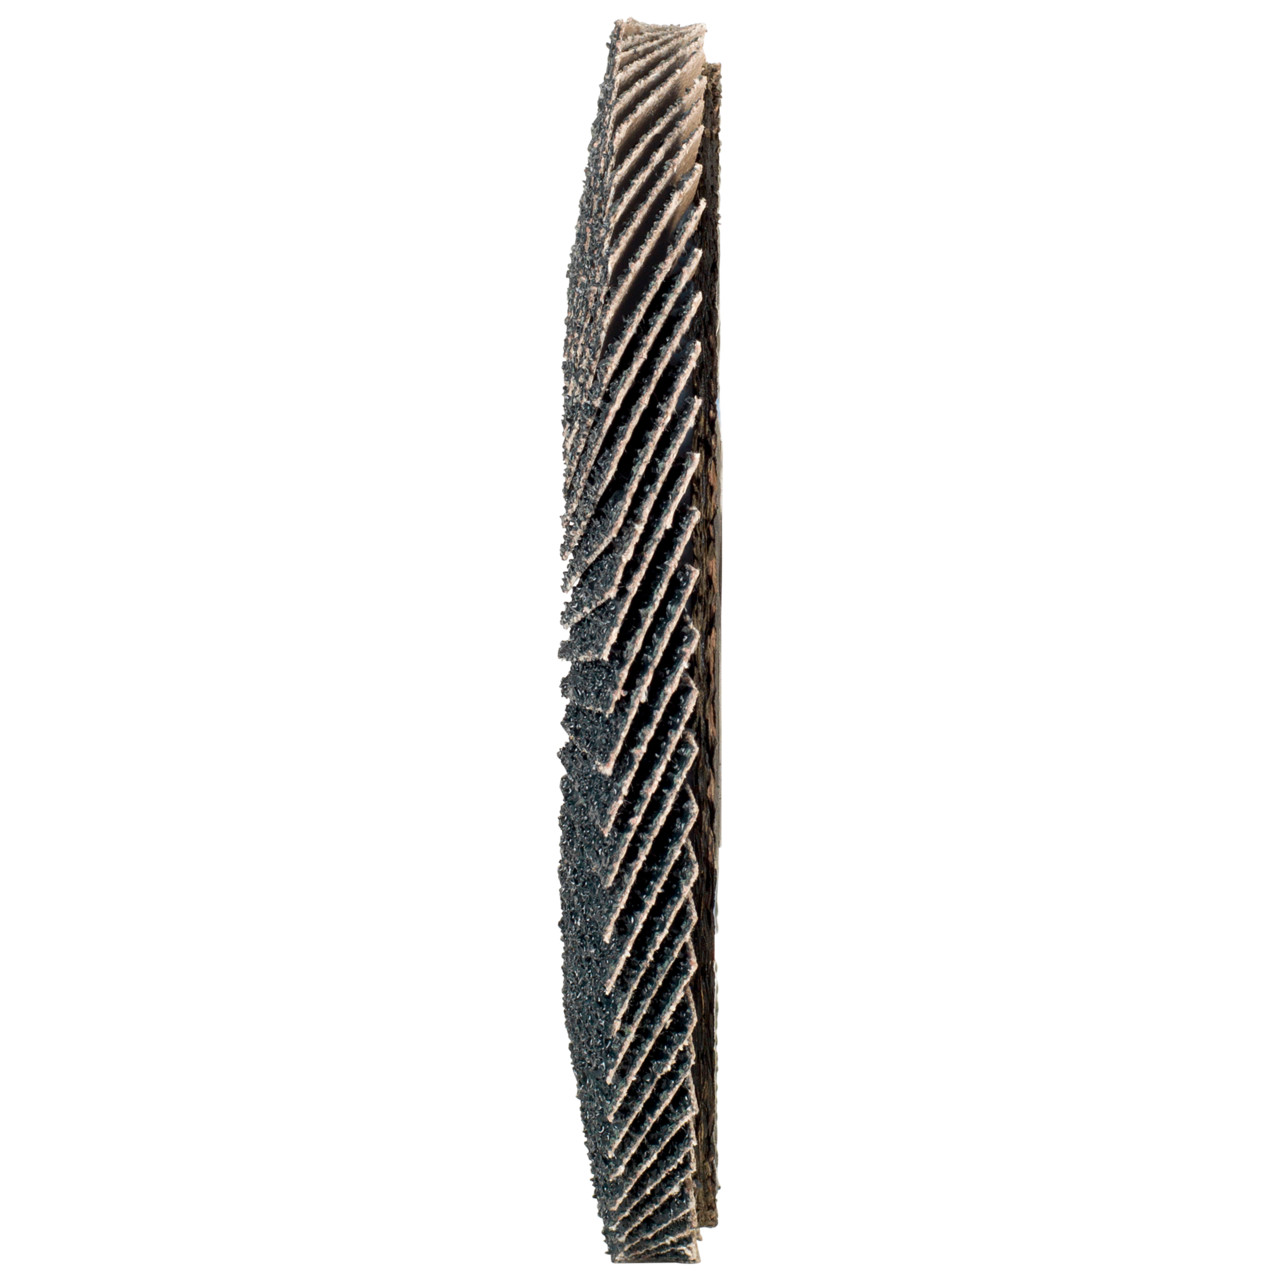 Tyrolit Gekartelde borgring DxH 115x22,2 2in1 voor staal &amp; roestvrij staal, P60, vorm: 27A - offset versie (glasvezeldrager huisversie), Art. 668644